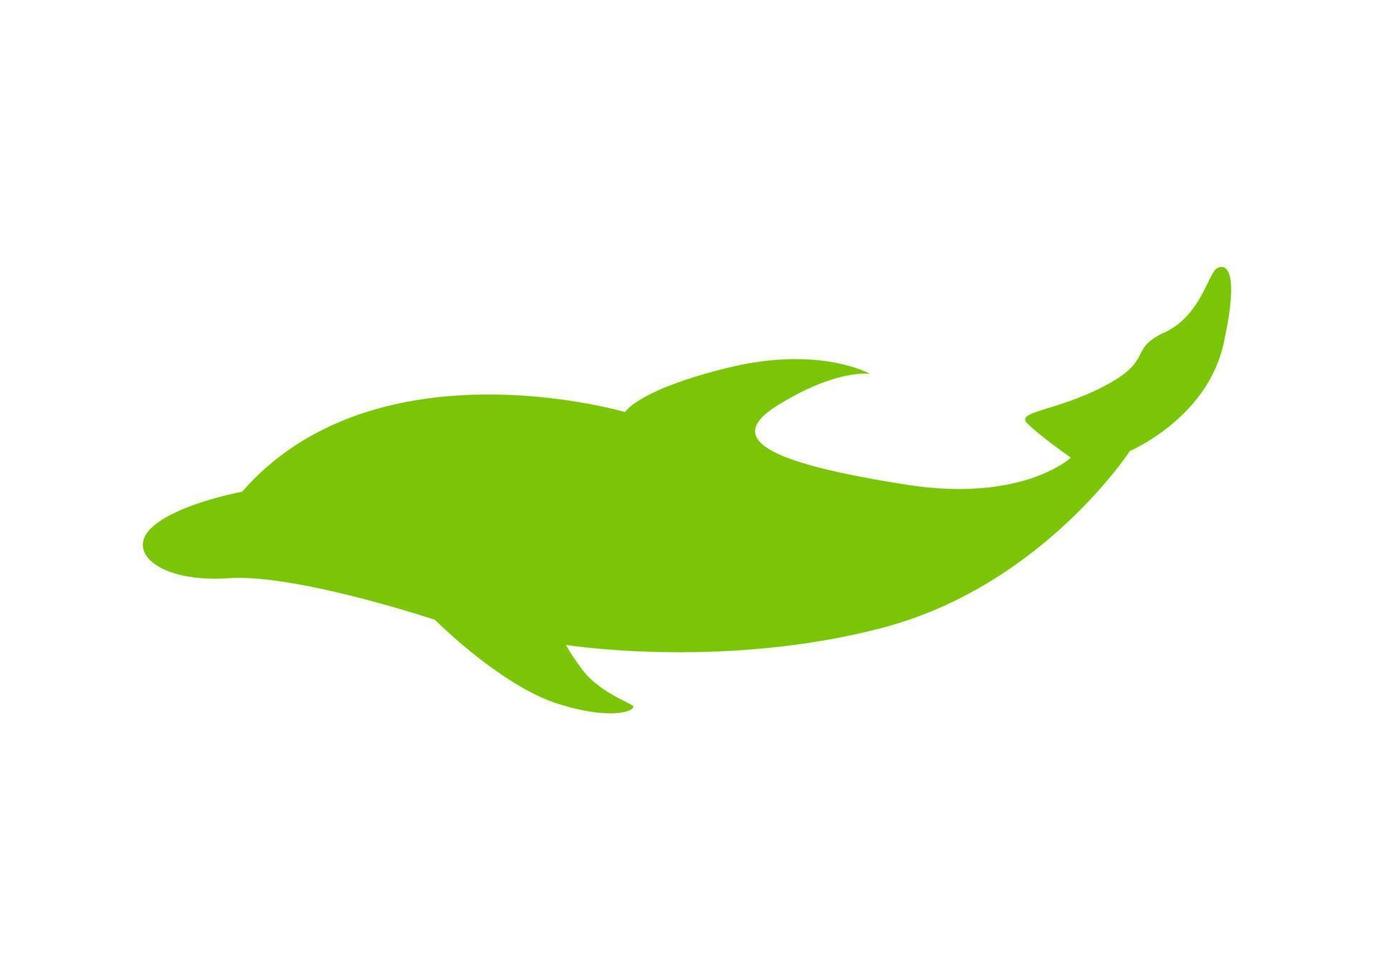 conception d'icône ou de symbole en forme de dauphin vecteur